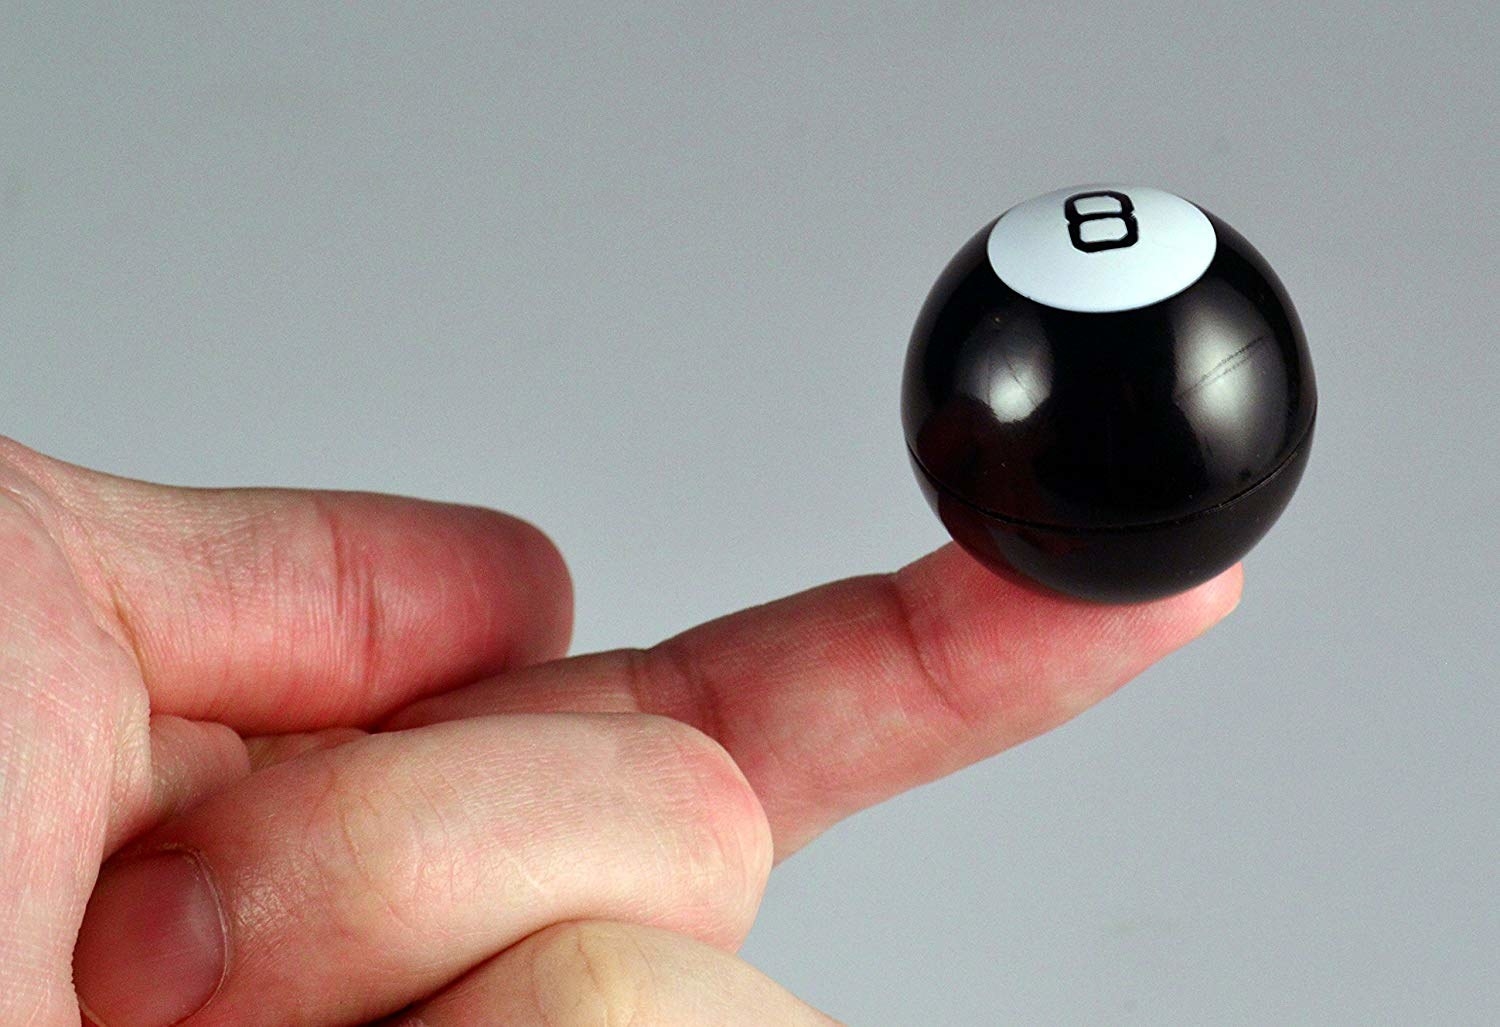 tiny magic 8 ball